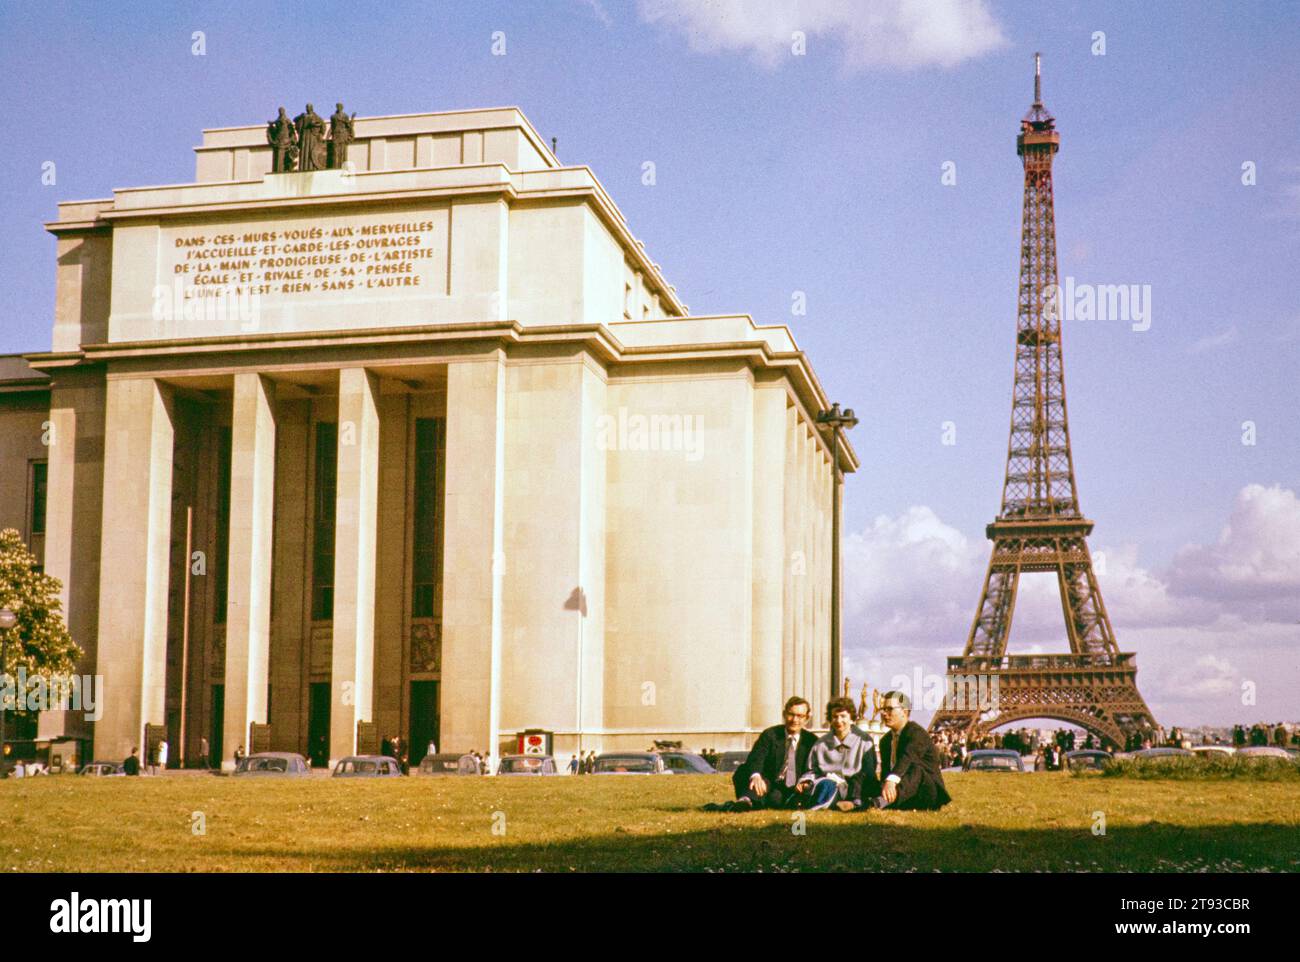 Musée de l'Homme museum and Eiffel Tower, Paris, France, early 1960s Stock Photo